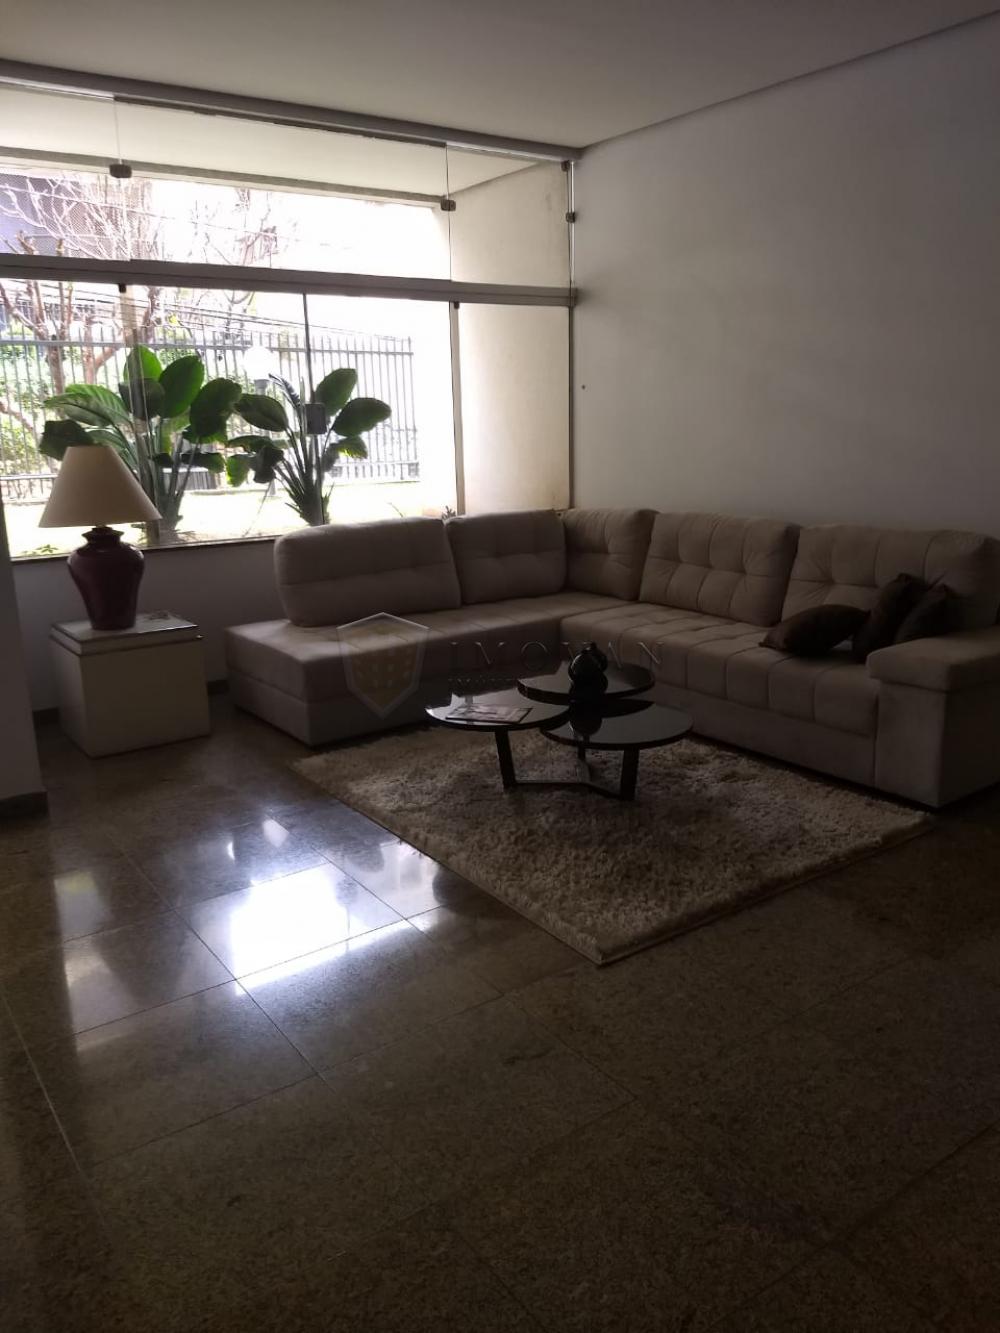 Comprar Apartamento / Padrão em Ribeirão Preto R$ 375.000,00 - Foto 3